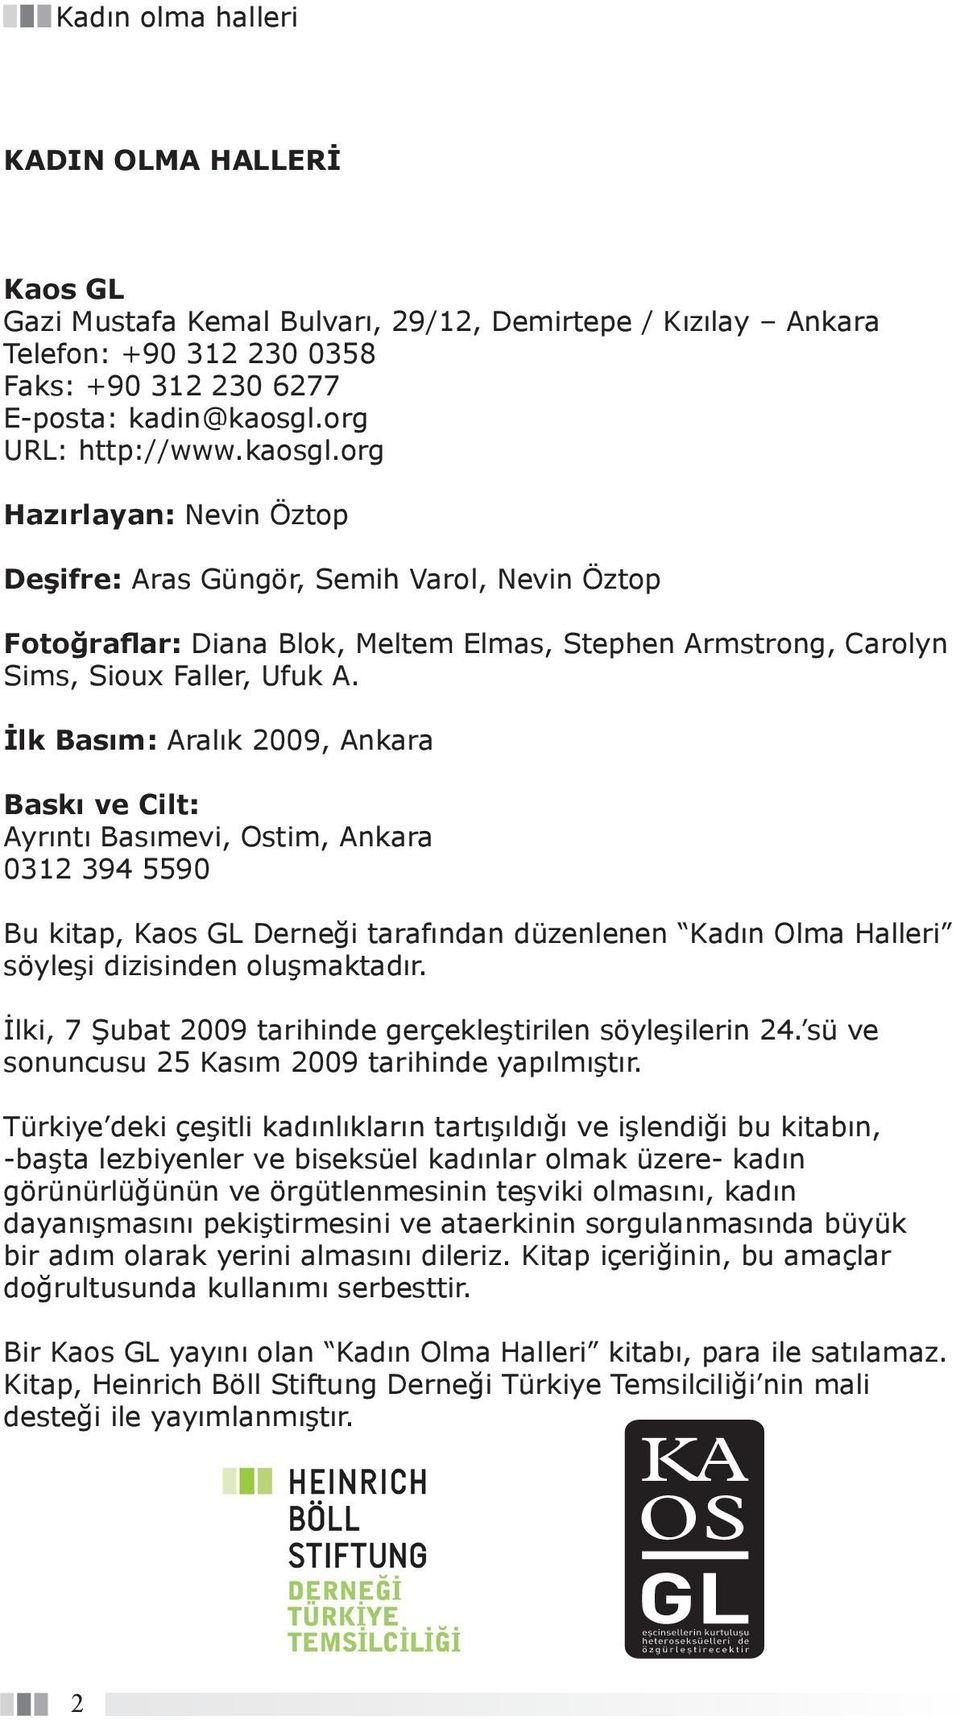 İlk Basım: Aralık 2009, Ankara Baskı ve Cilt: Ayrıntı Basımevi, Ostim, Ankara 0312 394 5590 Bu kitap, Kaos GL Derneği tarafından düzenlenen Kadın Olma Halleri söyleşi dizisinden oluşmaktadır.